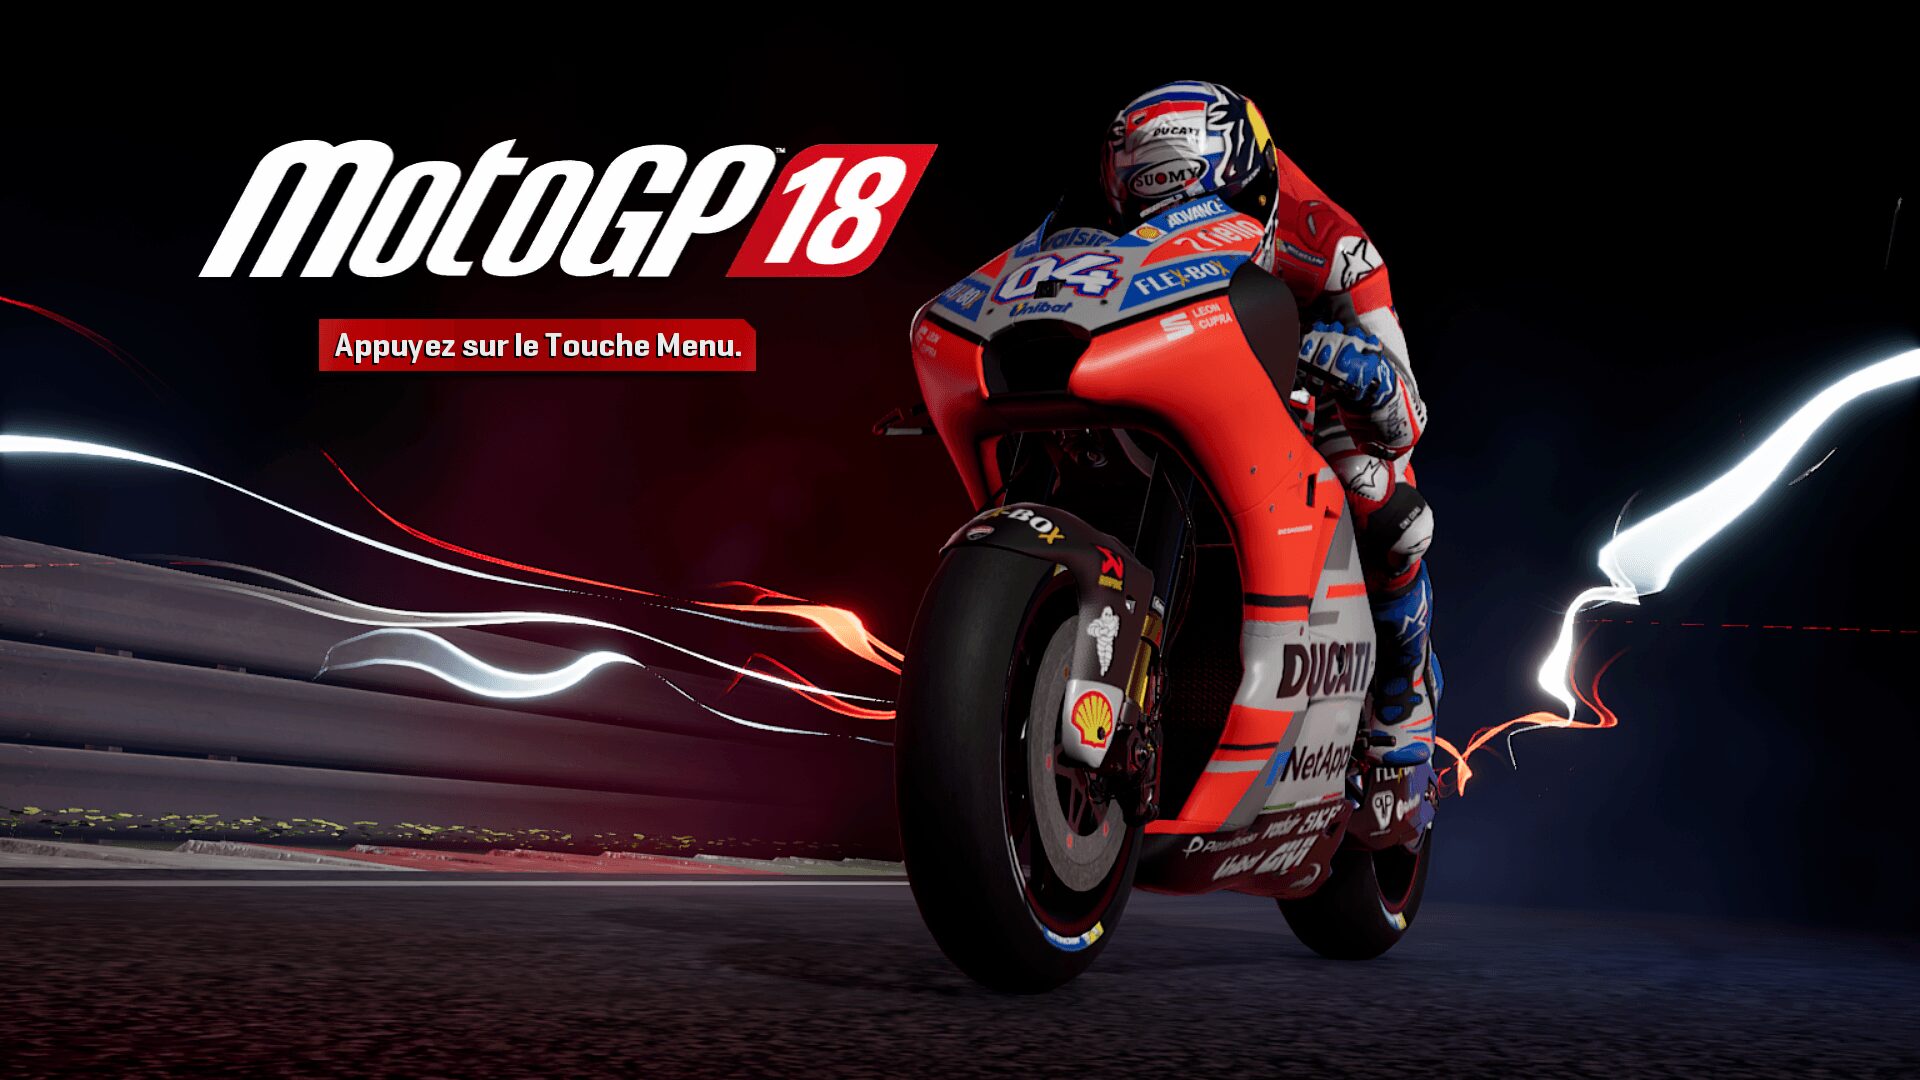 MotoGP 18 Kresys MotoGP18 20180904 16 57 51 MotoGP 18 – La simulation moto par excellence ? gaming